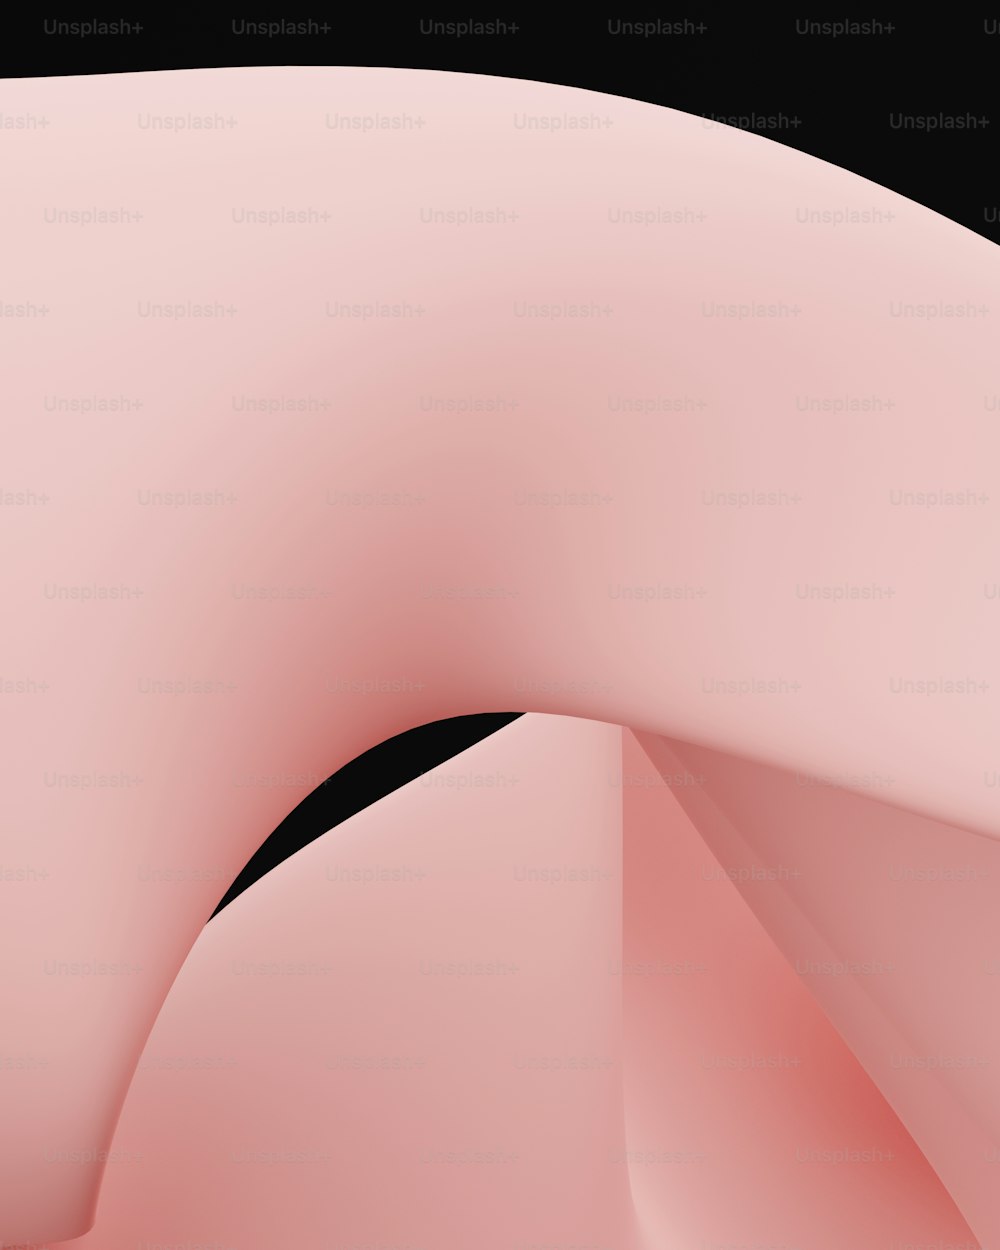 Una imagen generada por computadora de un fondo negro y rosa